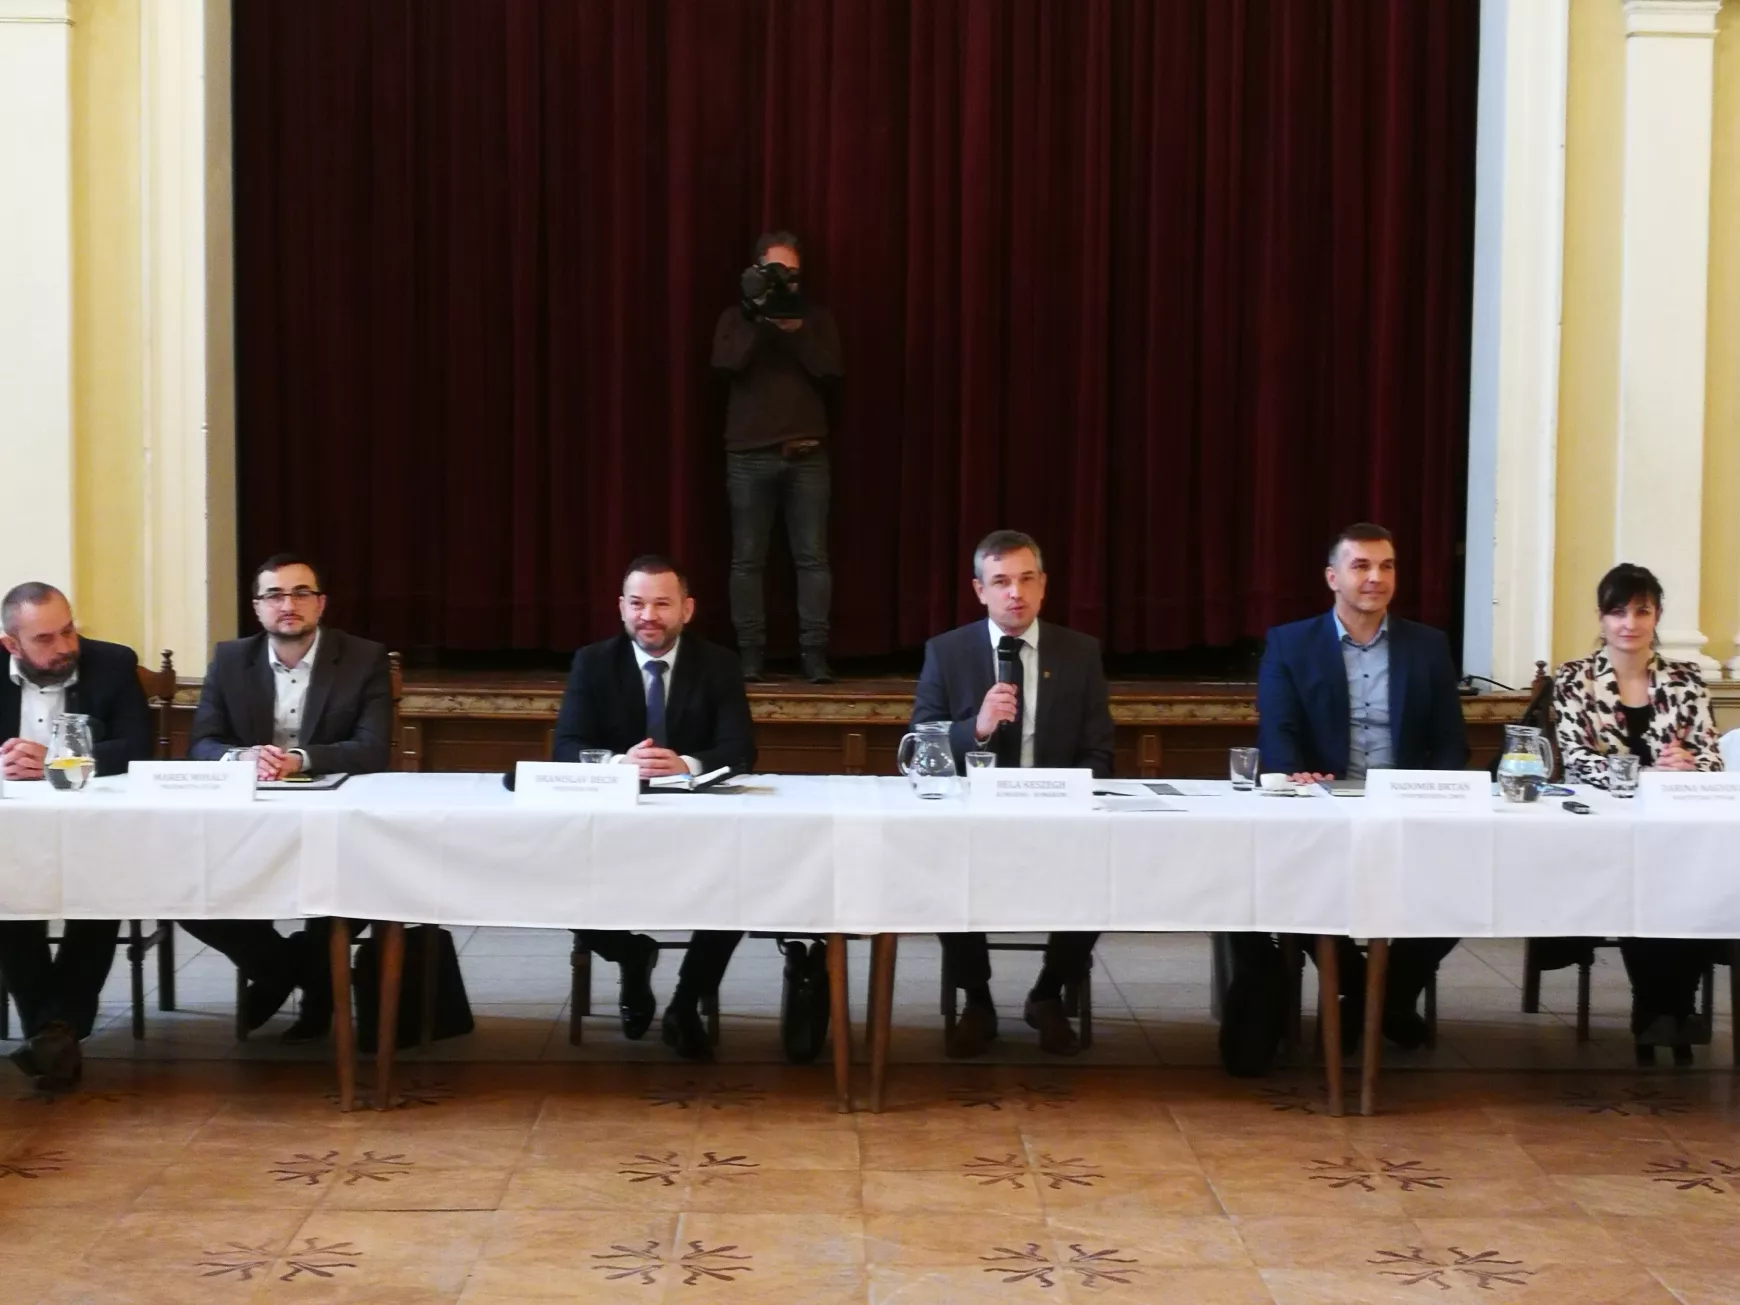 Branislav Becík megyefőnök ma a Komáromi járás polgármestereivel tanácskozott